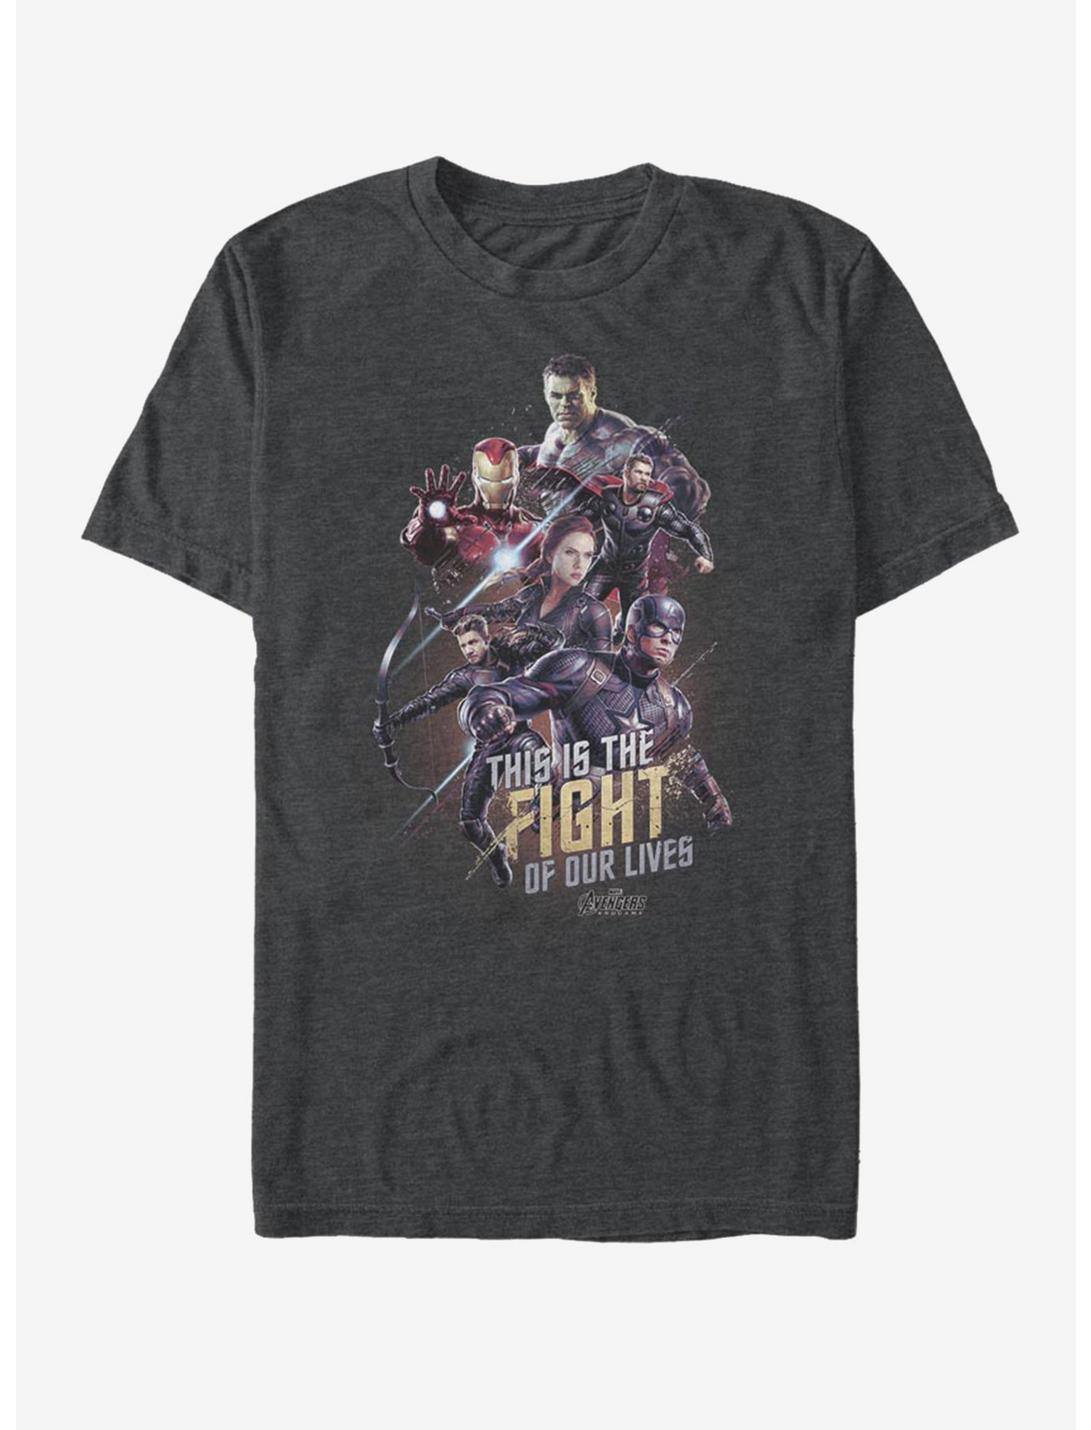 Marvel Avengers: Endgame Life Fight T-Shirt, , hi-res